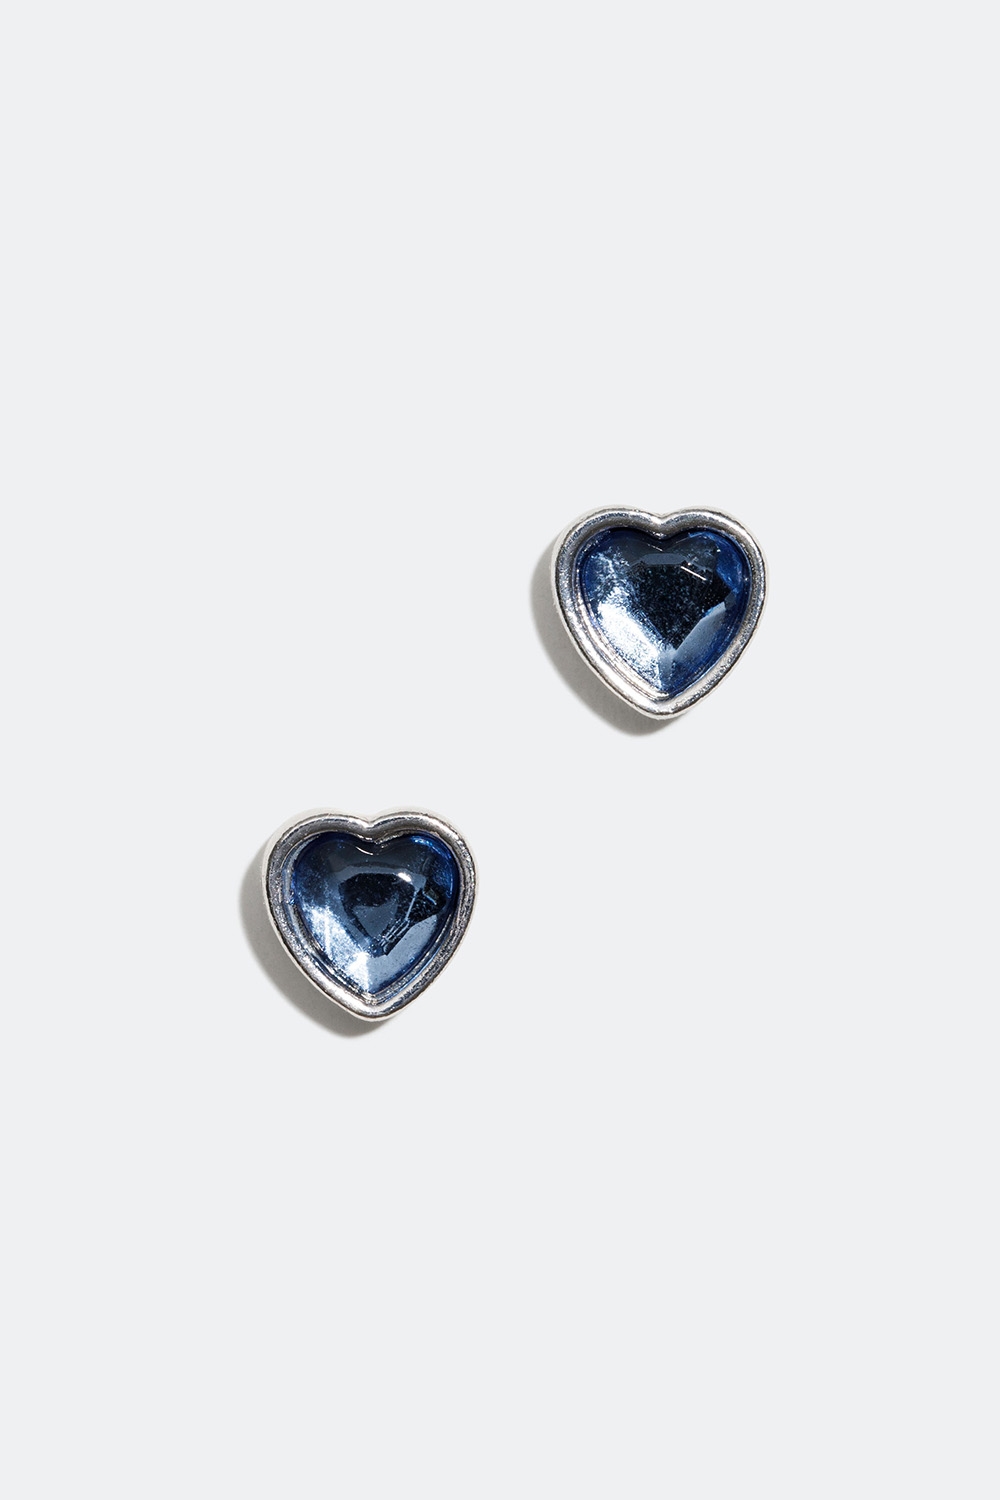 Nappikorvakorut, joissa sydämiä ja sinisiä lasikiviä ryhmässä Korut / Korvakorut / Nappikorvakorut @ Glitter (253004467001)